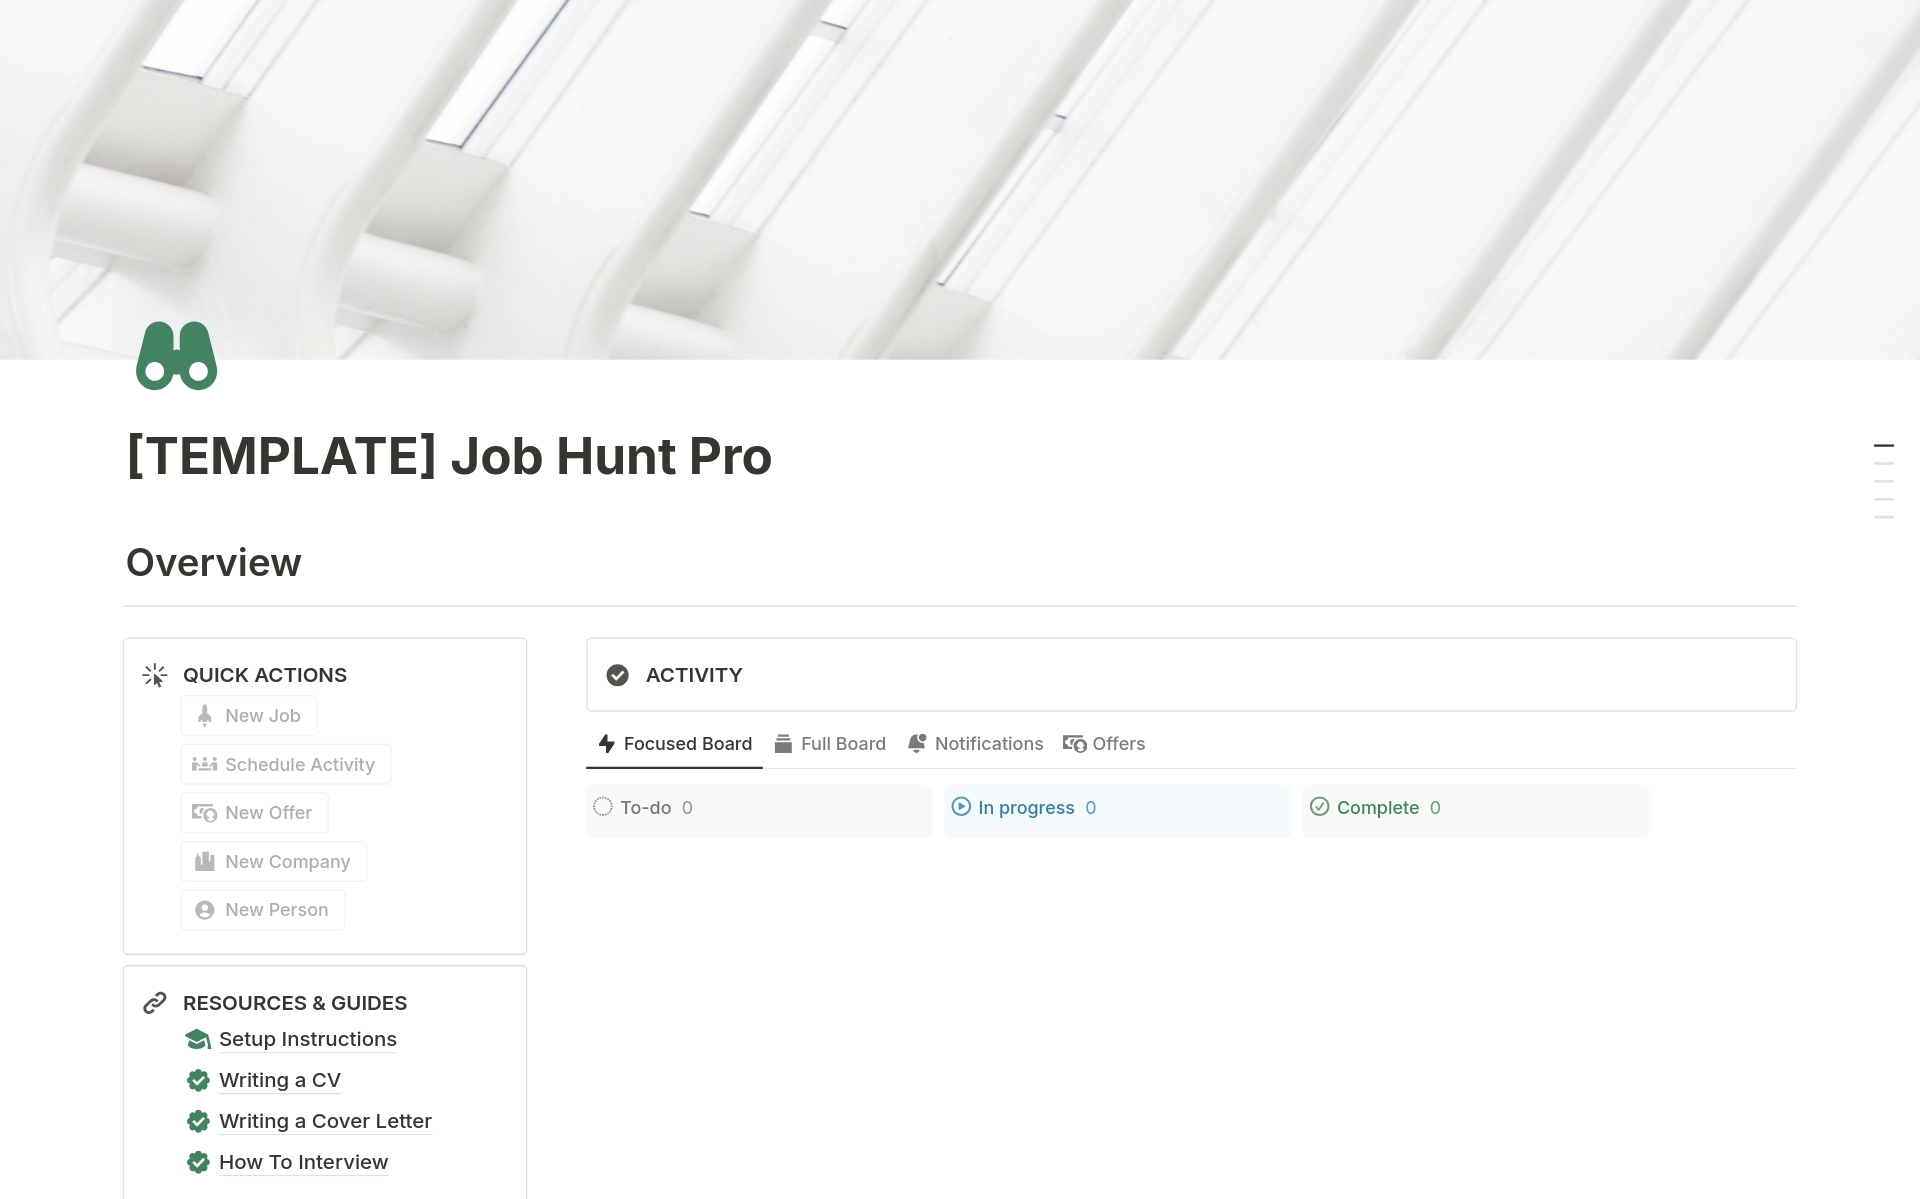 Vista previa de una plantilla para Job Hunt Pro